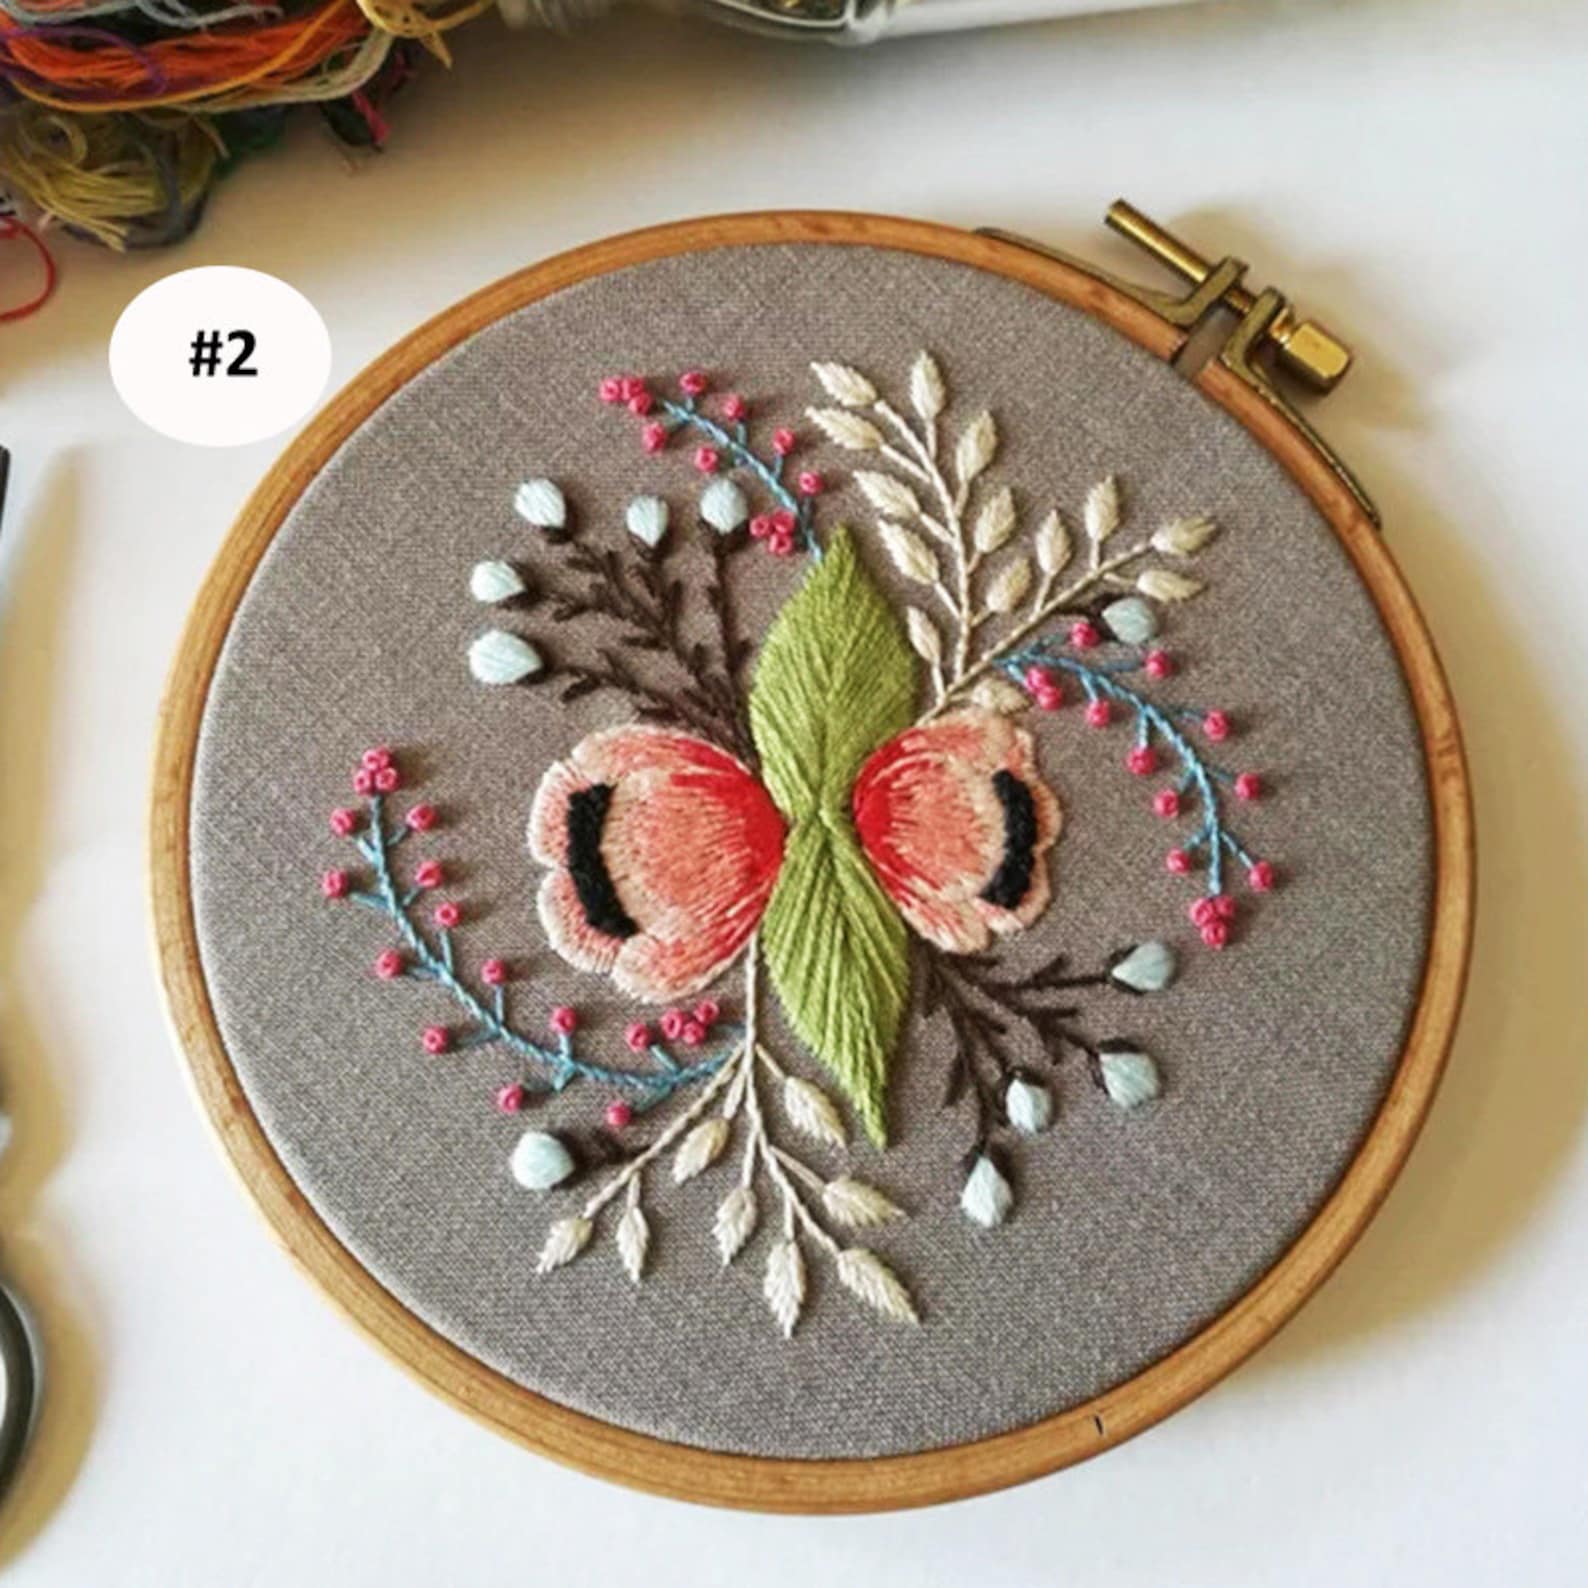 Original Crewel Embroidery Full Kit With Hoop Beginner Diy Etsy